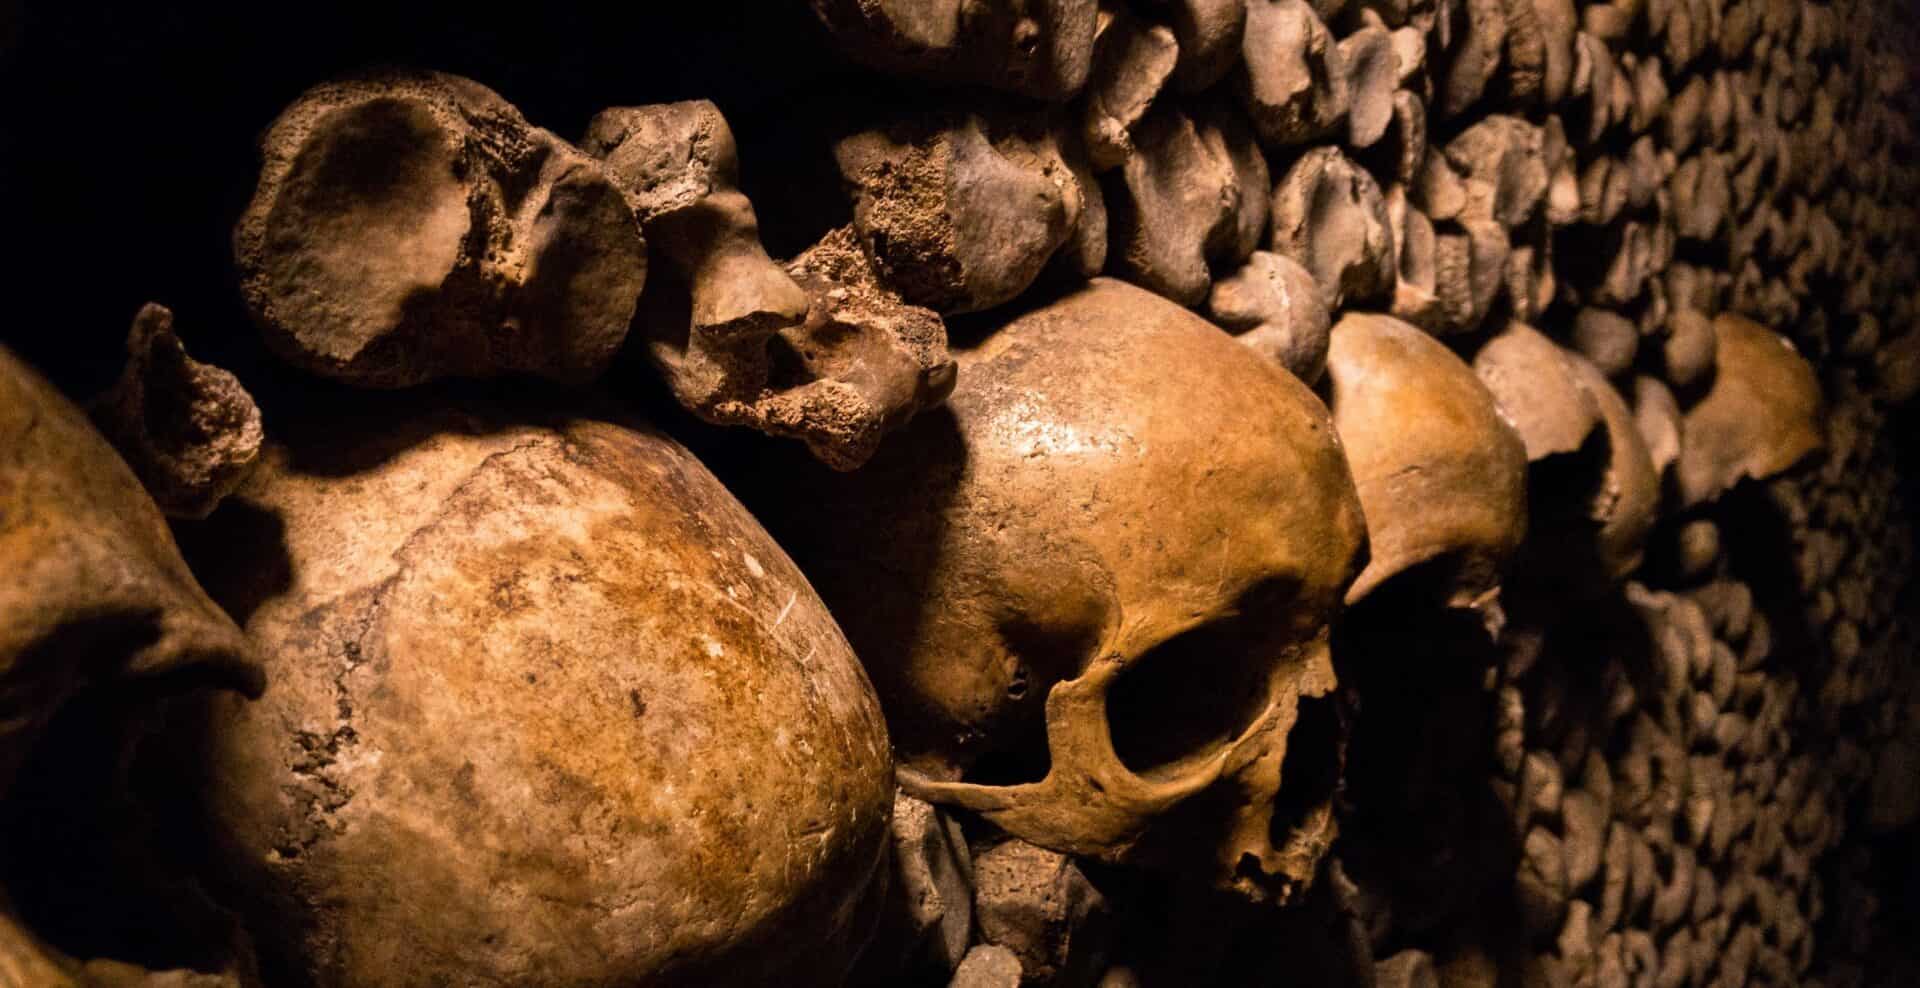 Bones in Catacombs below Paris